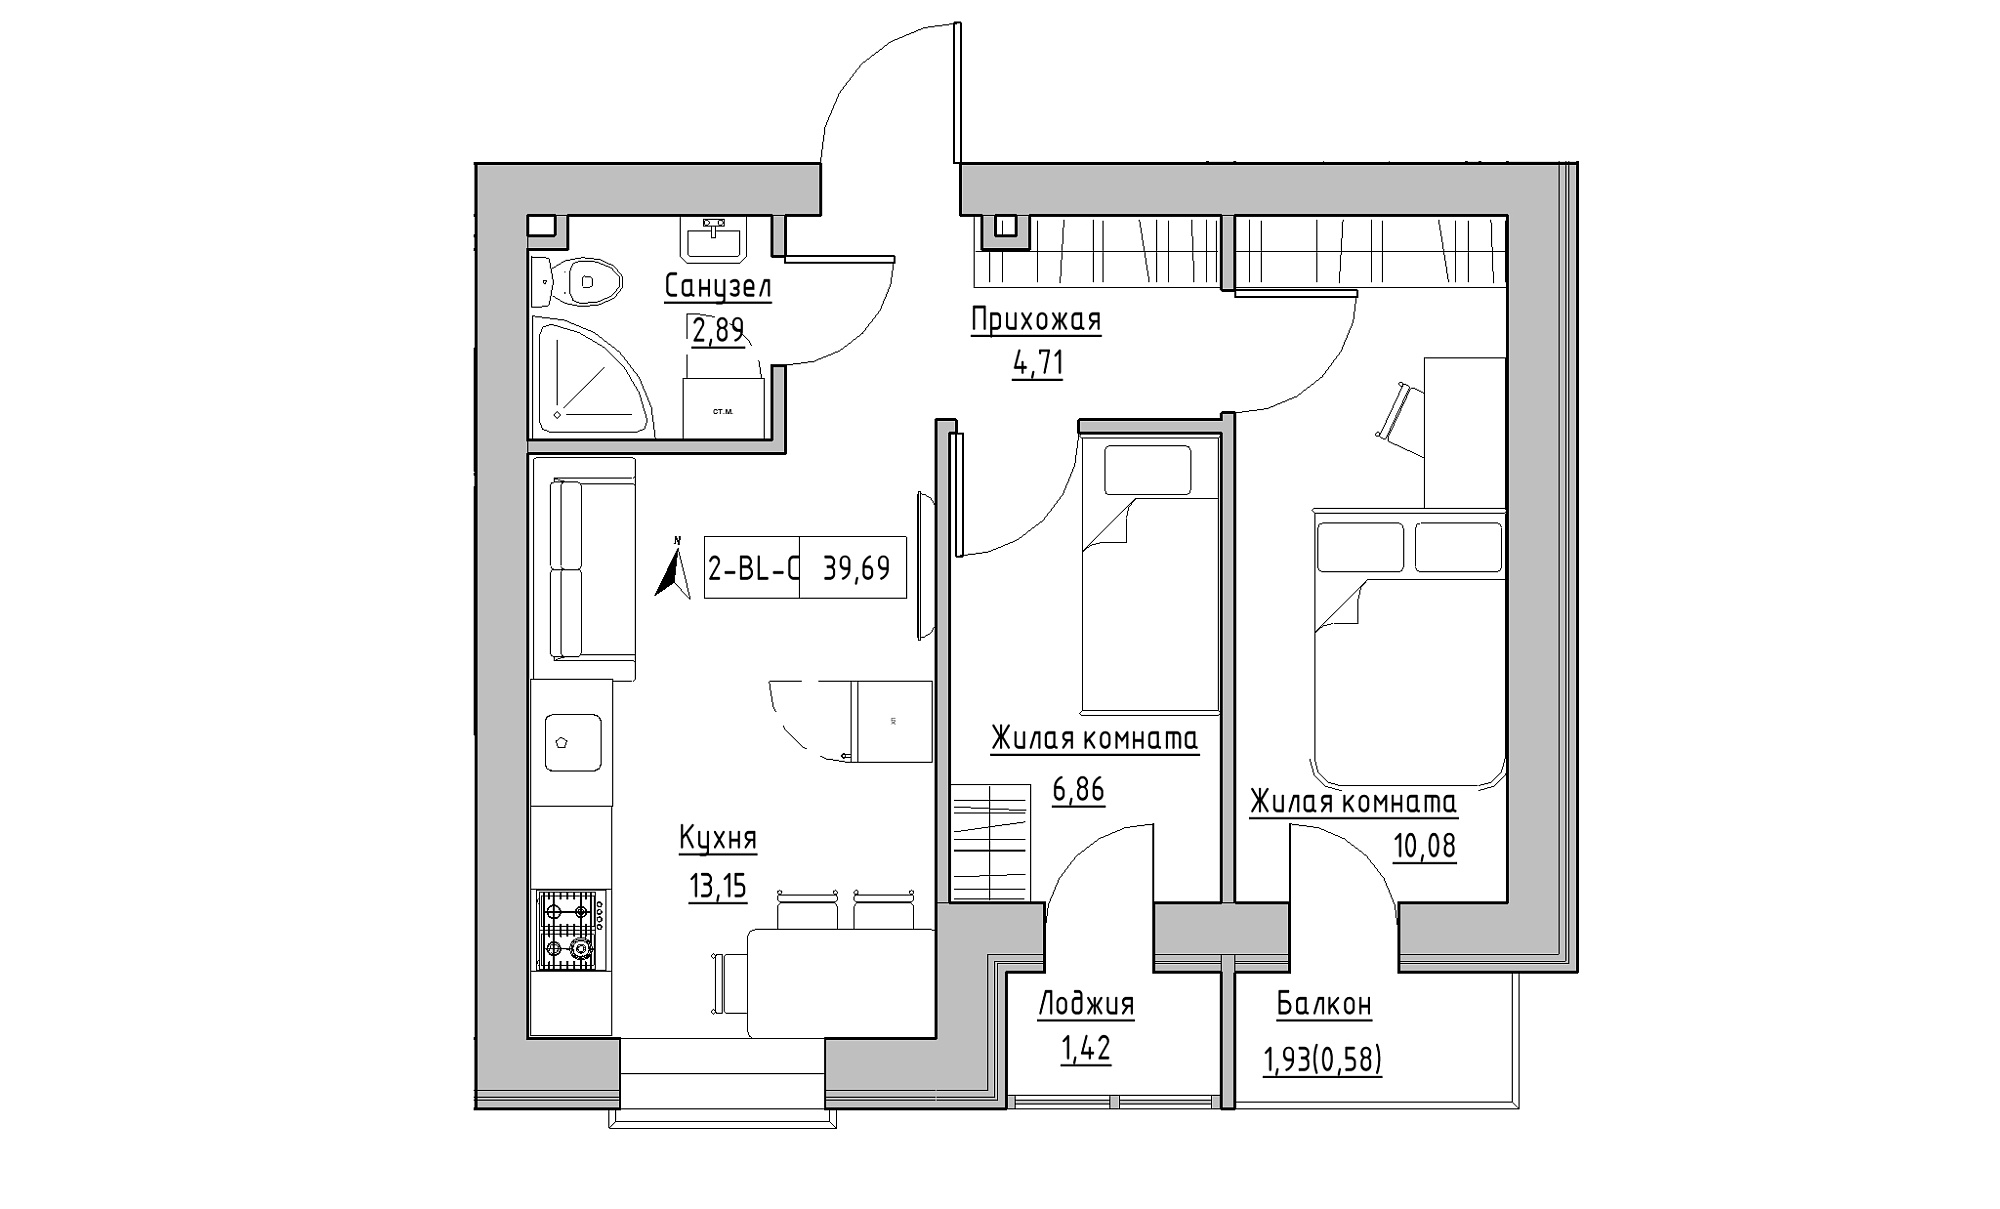 Планировка 2-к квартира площей 39.69м2, KS-016-04/0005.